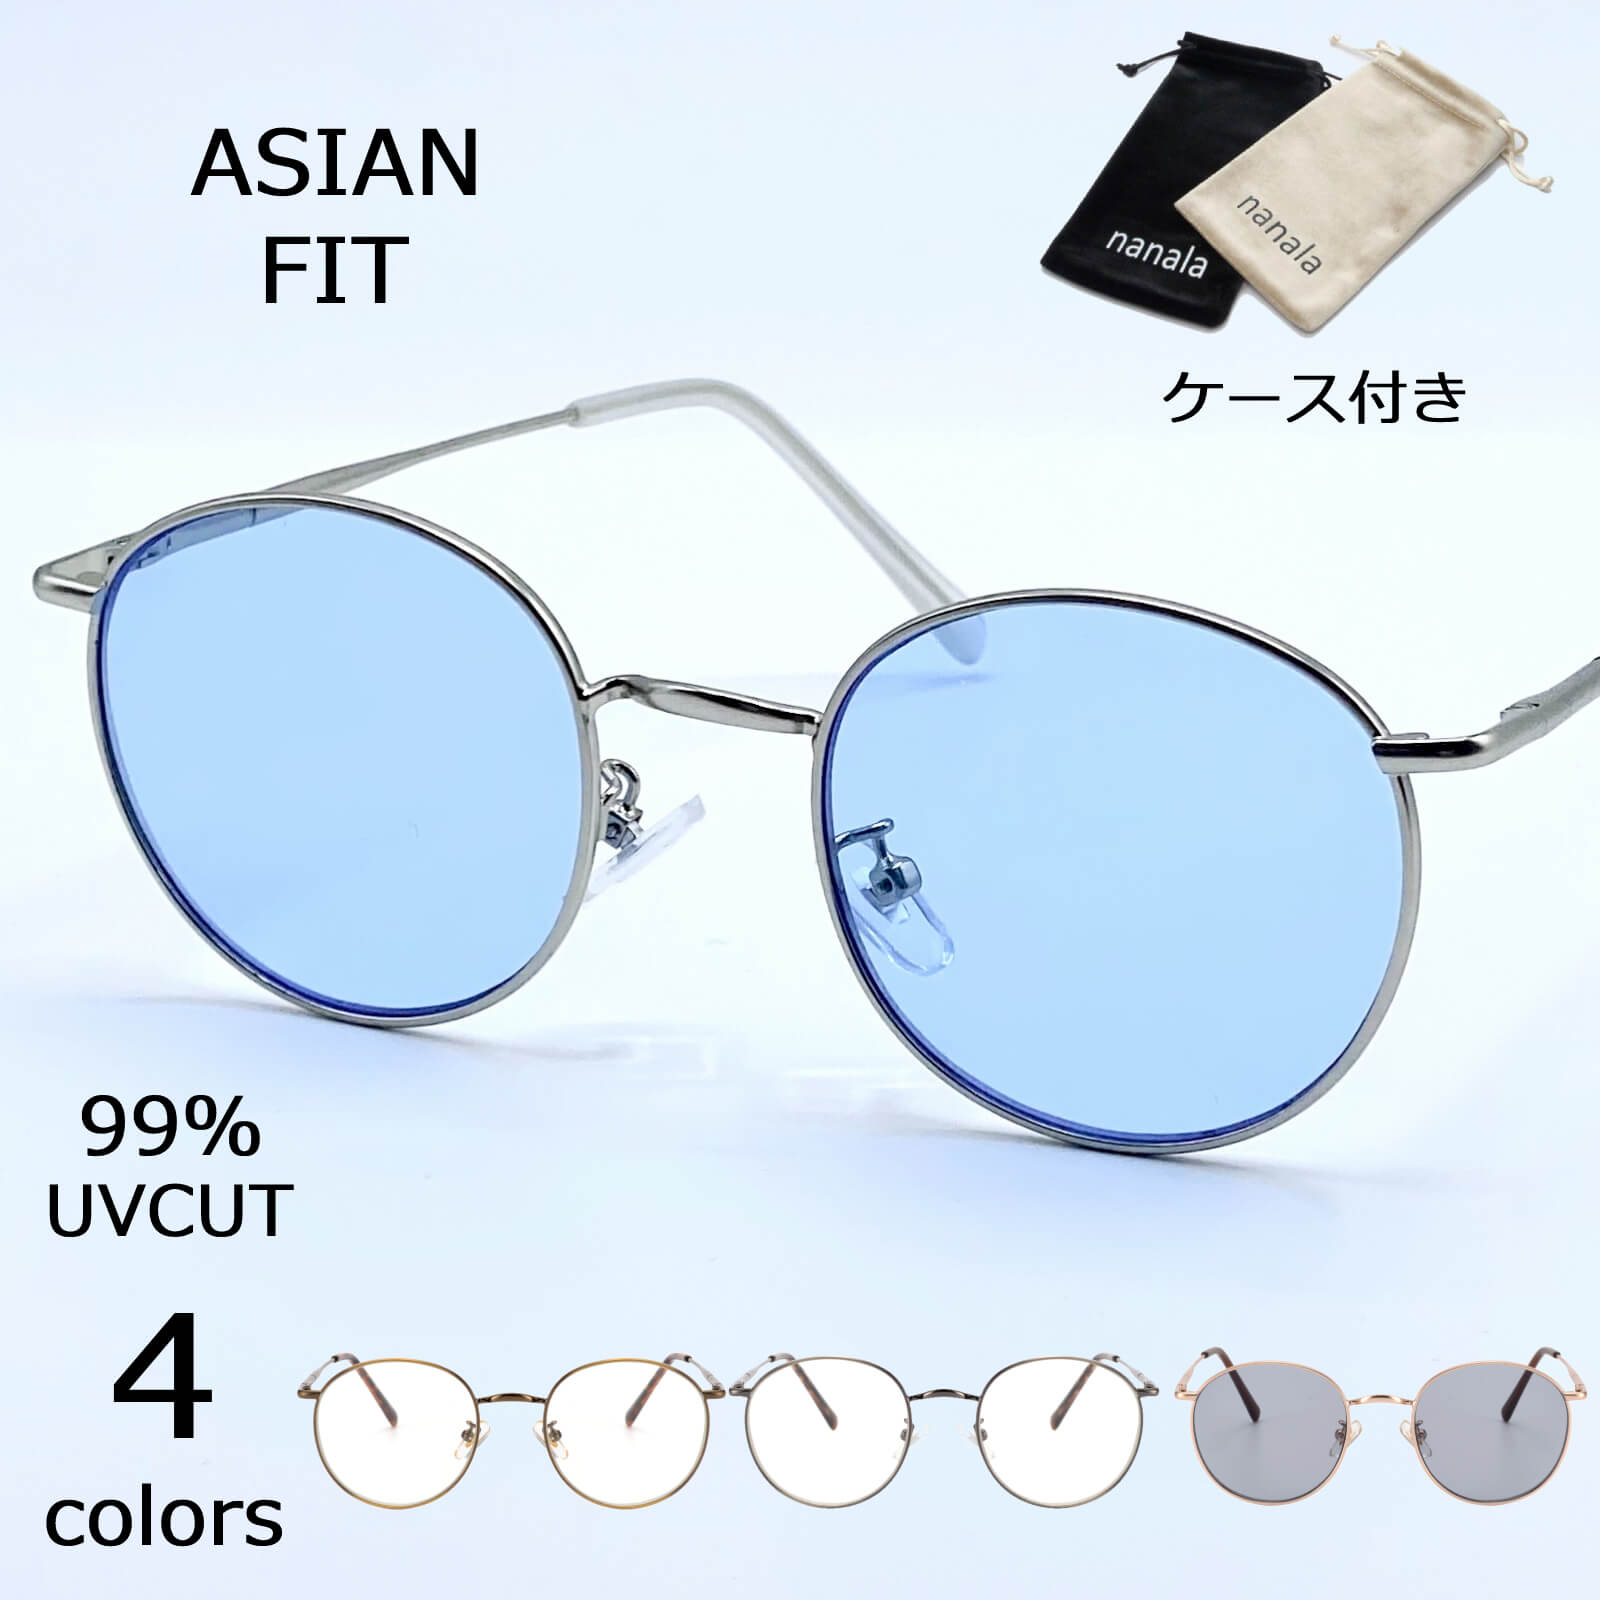 サングラス ブルーレンズ UVカット ブルー メガネ 軽量 レディース メンズ